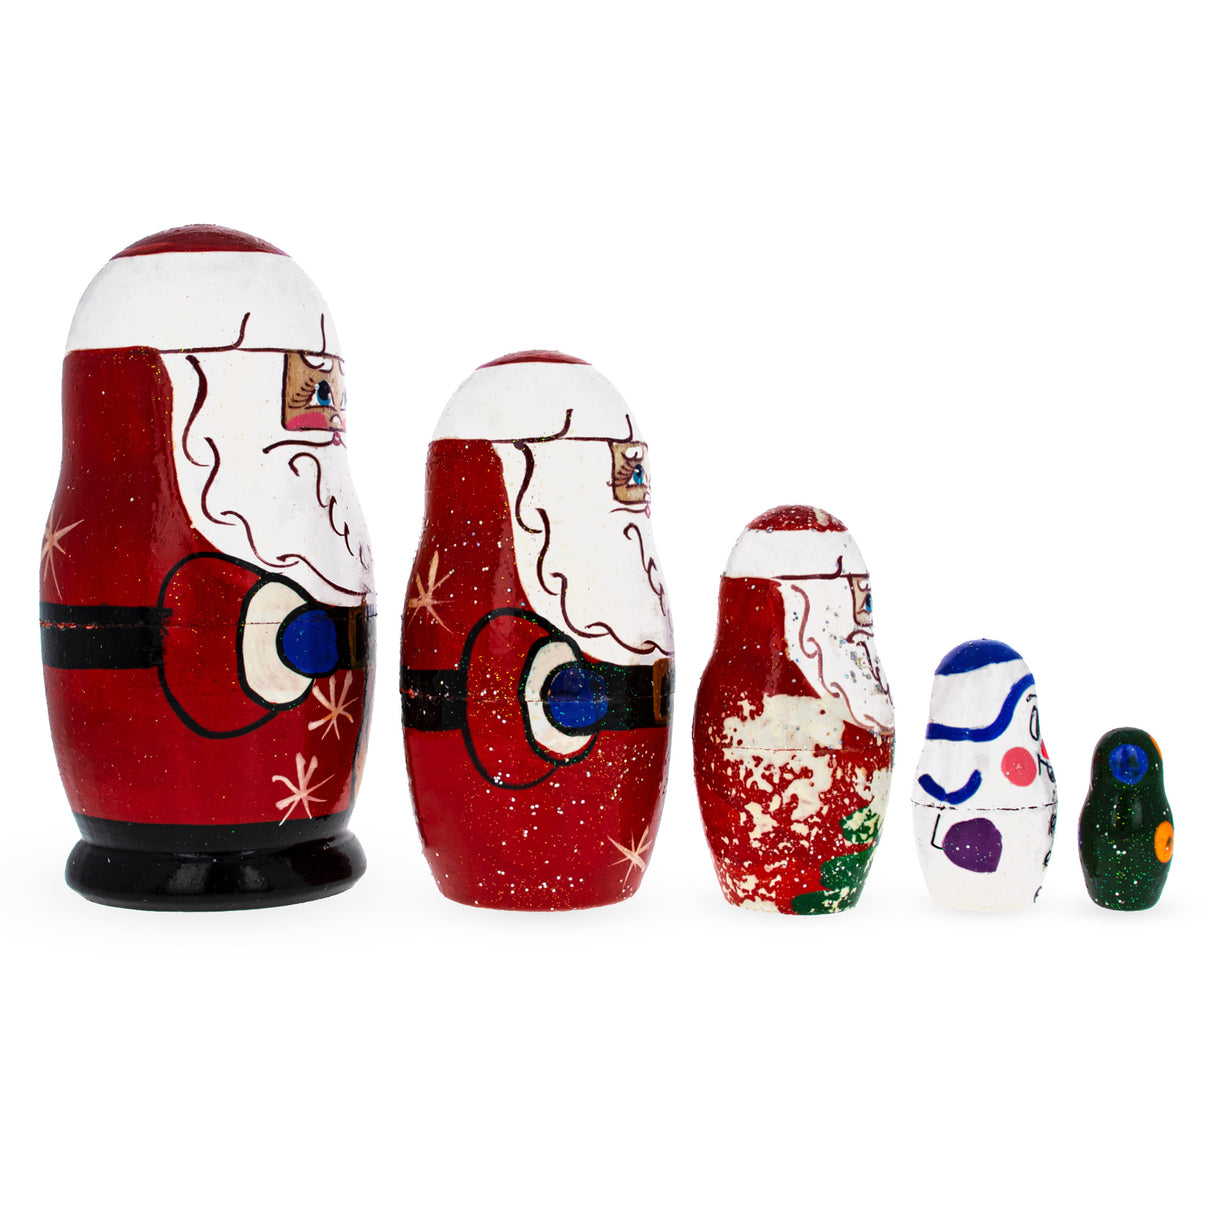 Buy Nesting Dolls Santa by BestPysanky Online Gift Ship